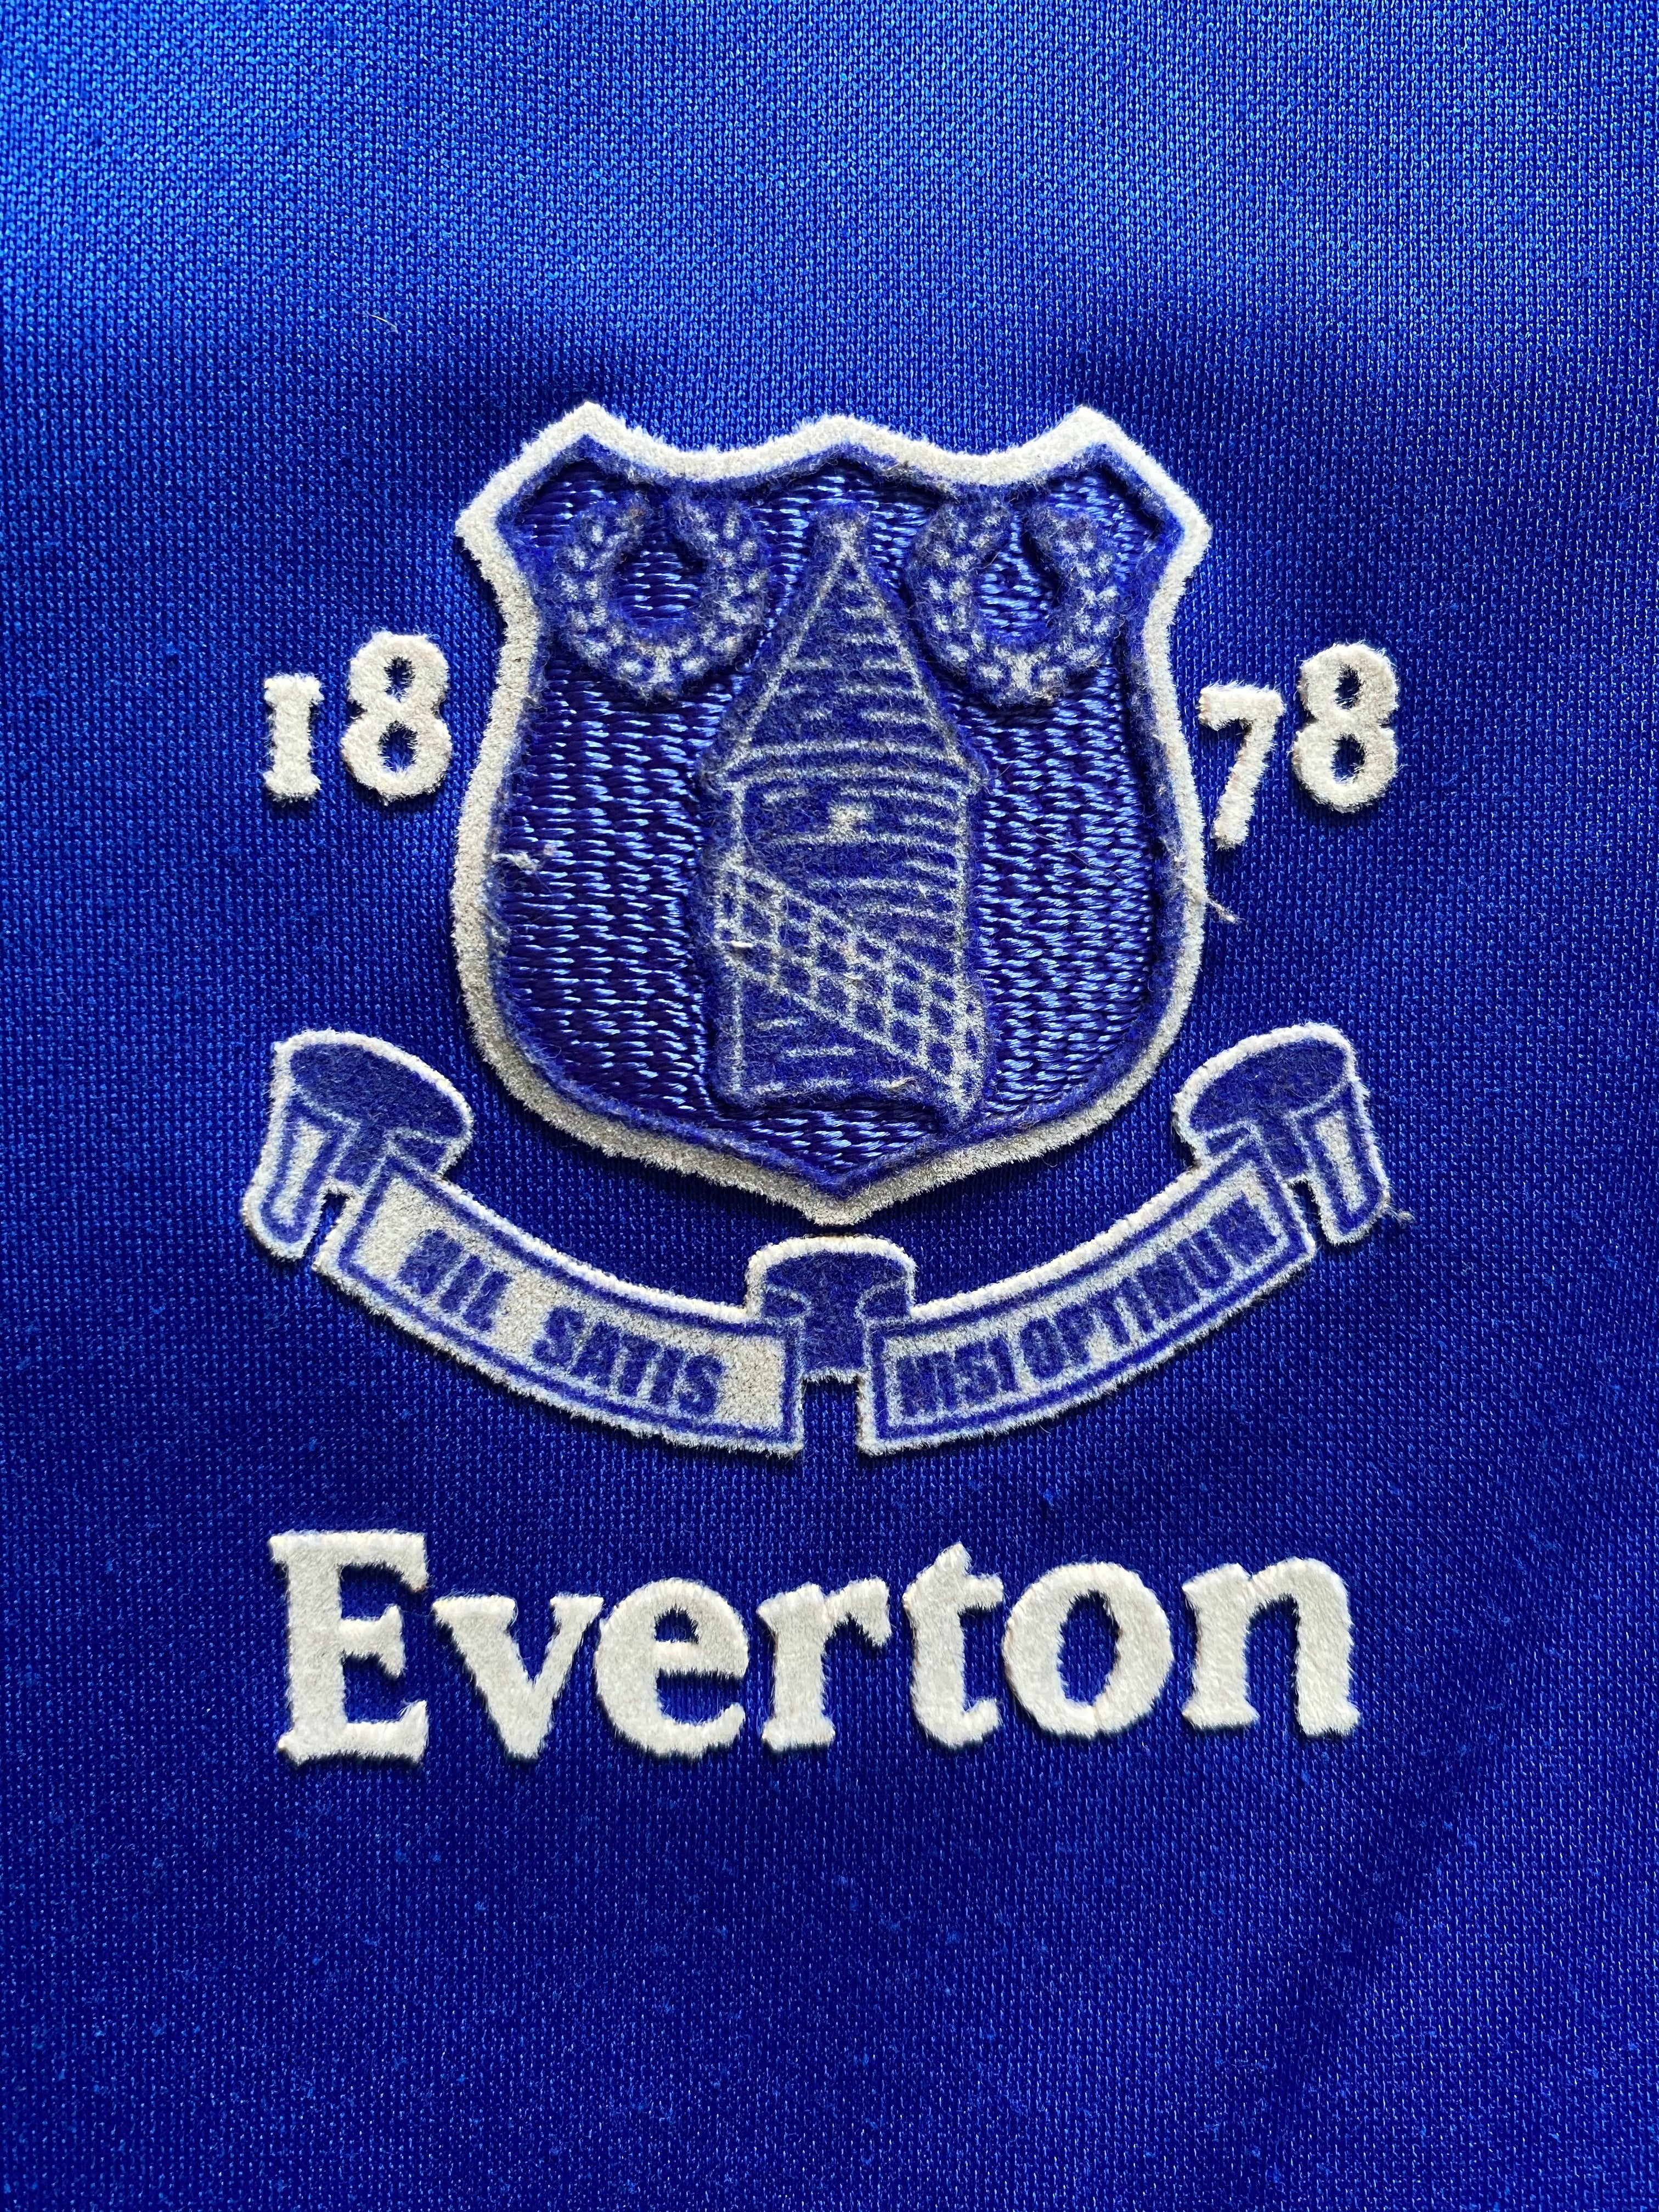 2002/03 Everton Home Shirt (XL) 7.5/10